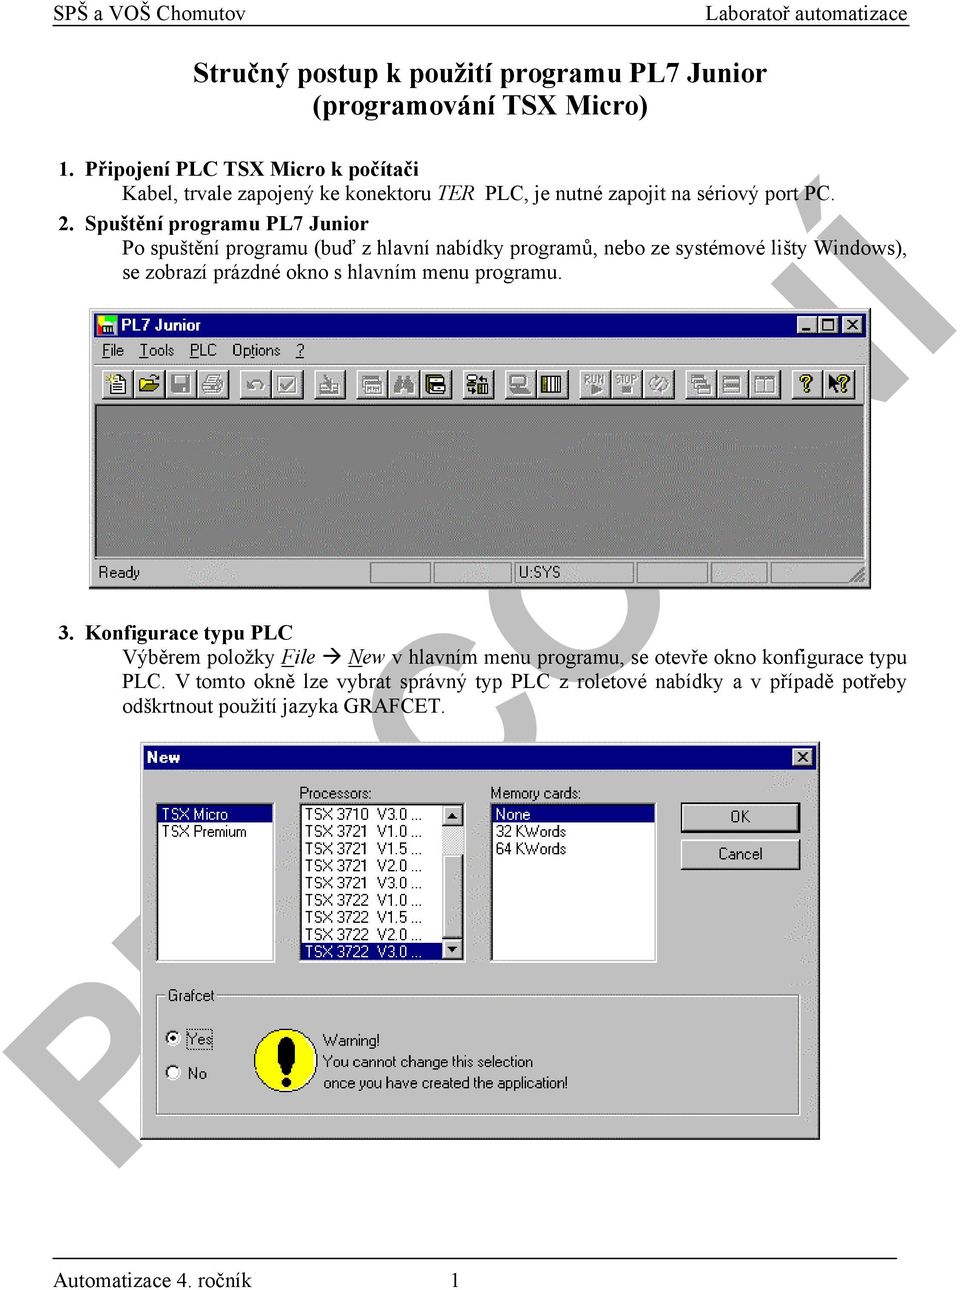 Spuštění programu PL7 Junior Po spuštění programu (buď z hlavní nabídky programů, nebo ze systémové lišty Windows), se zobrazí prázdné okno s hlavním